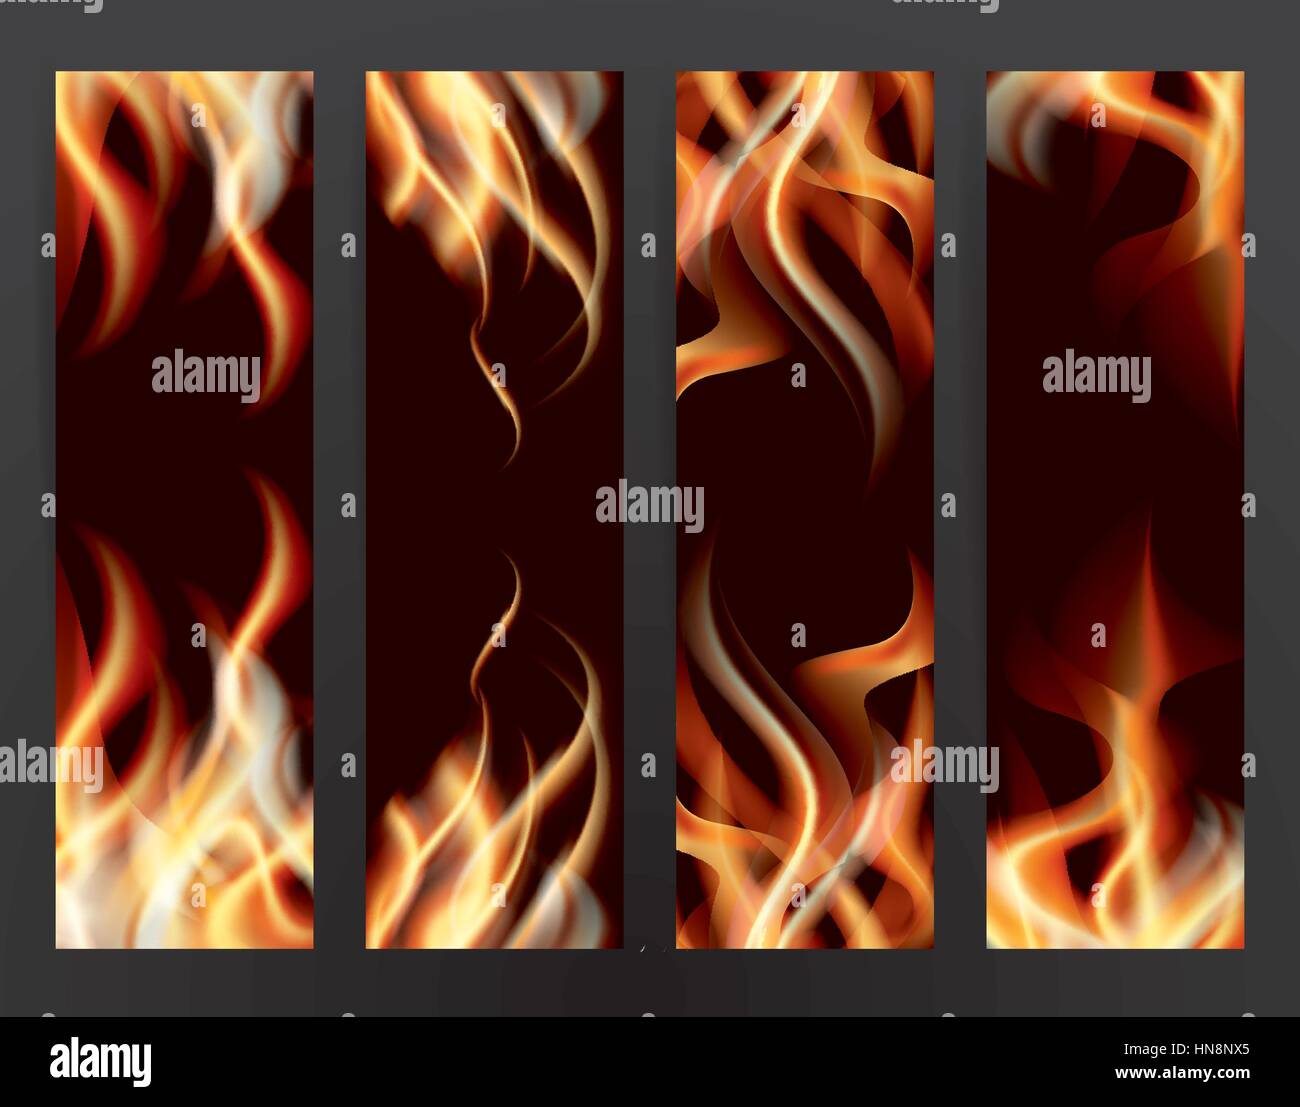 Banner-Set mit Feuer Flammen. Vektor-Illustration. Stock Vektor